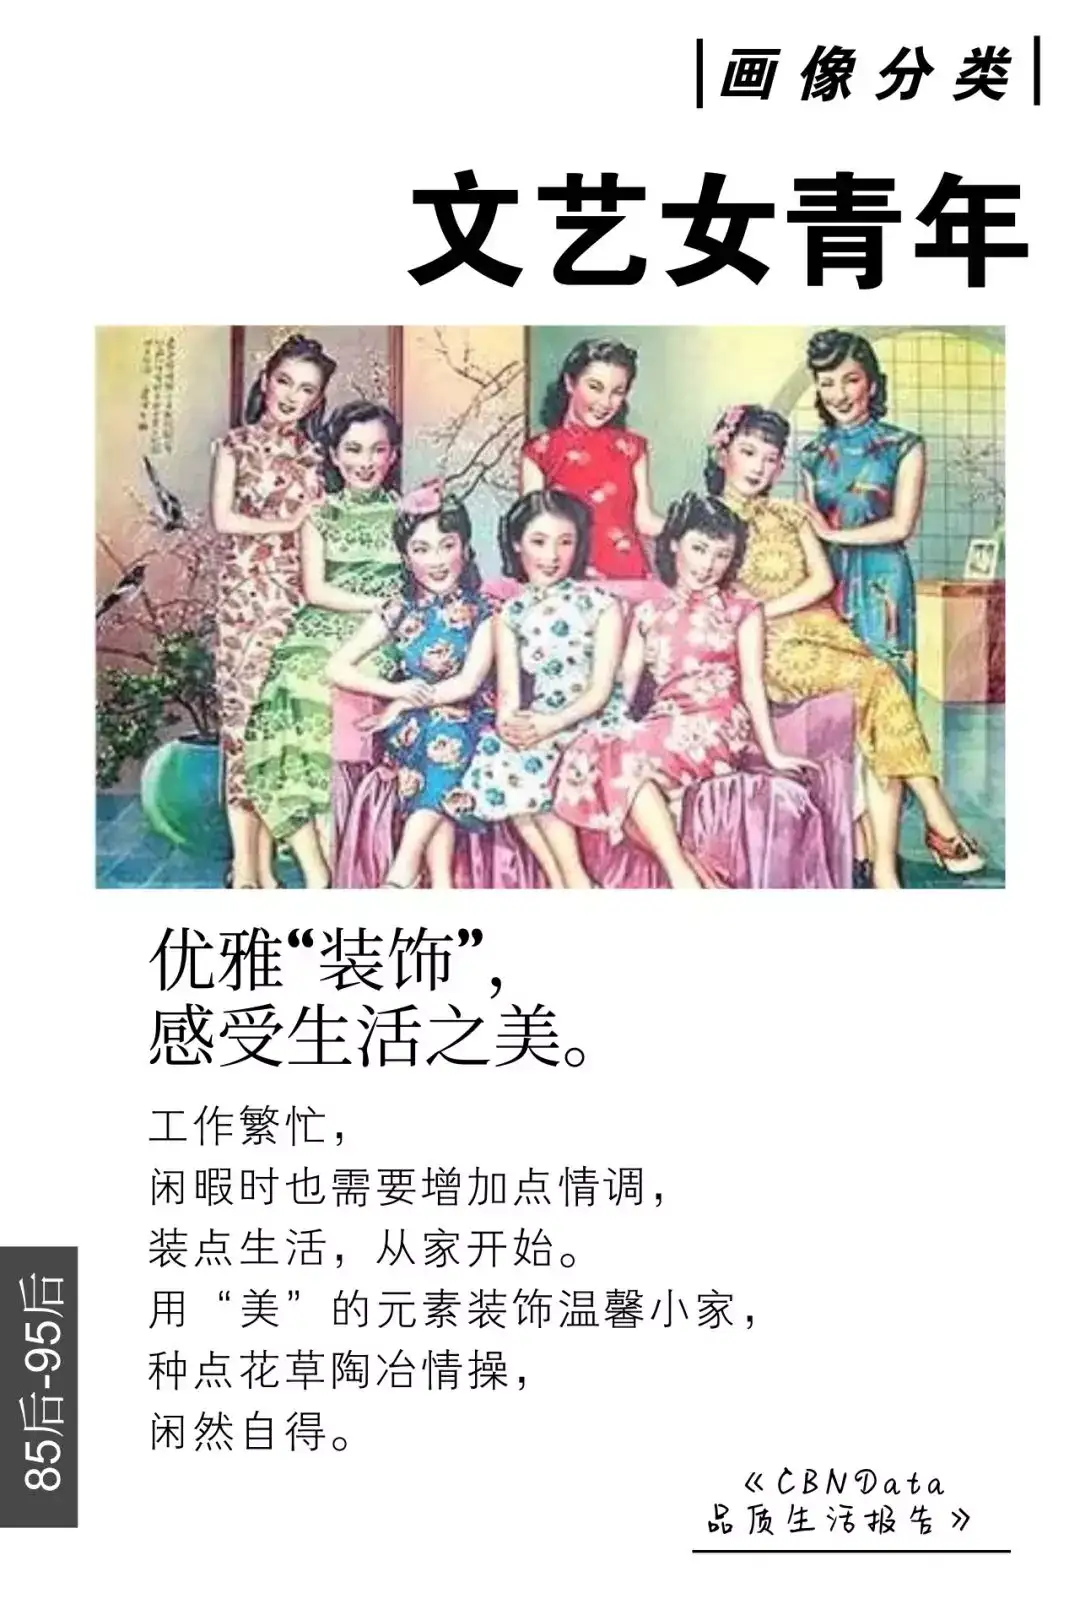 11本报告精华 5分钟看遍中国女性消费者画像图谱 知乎